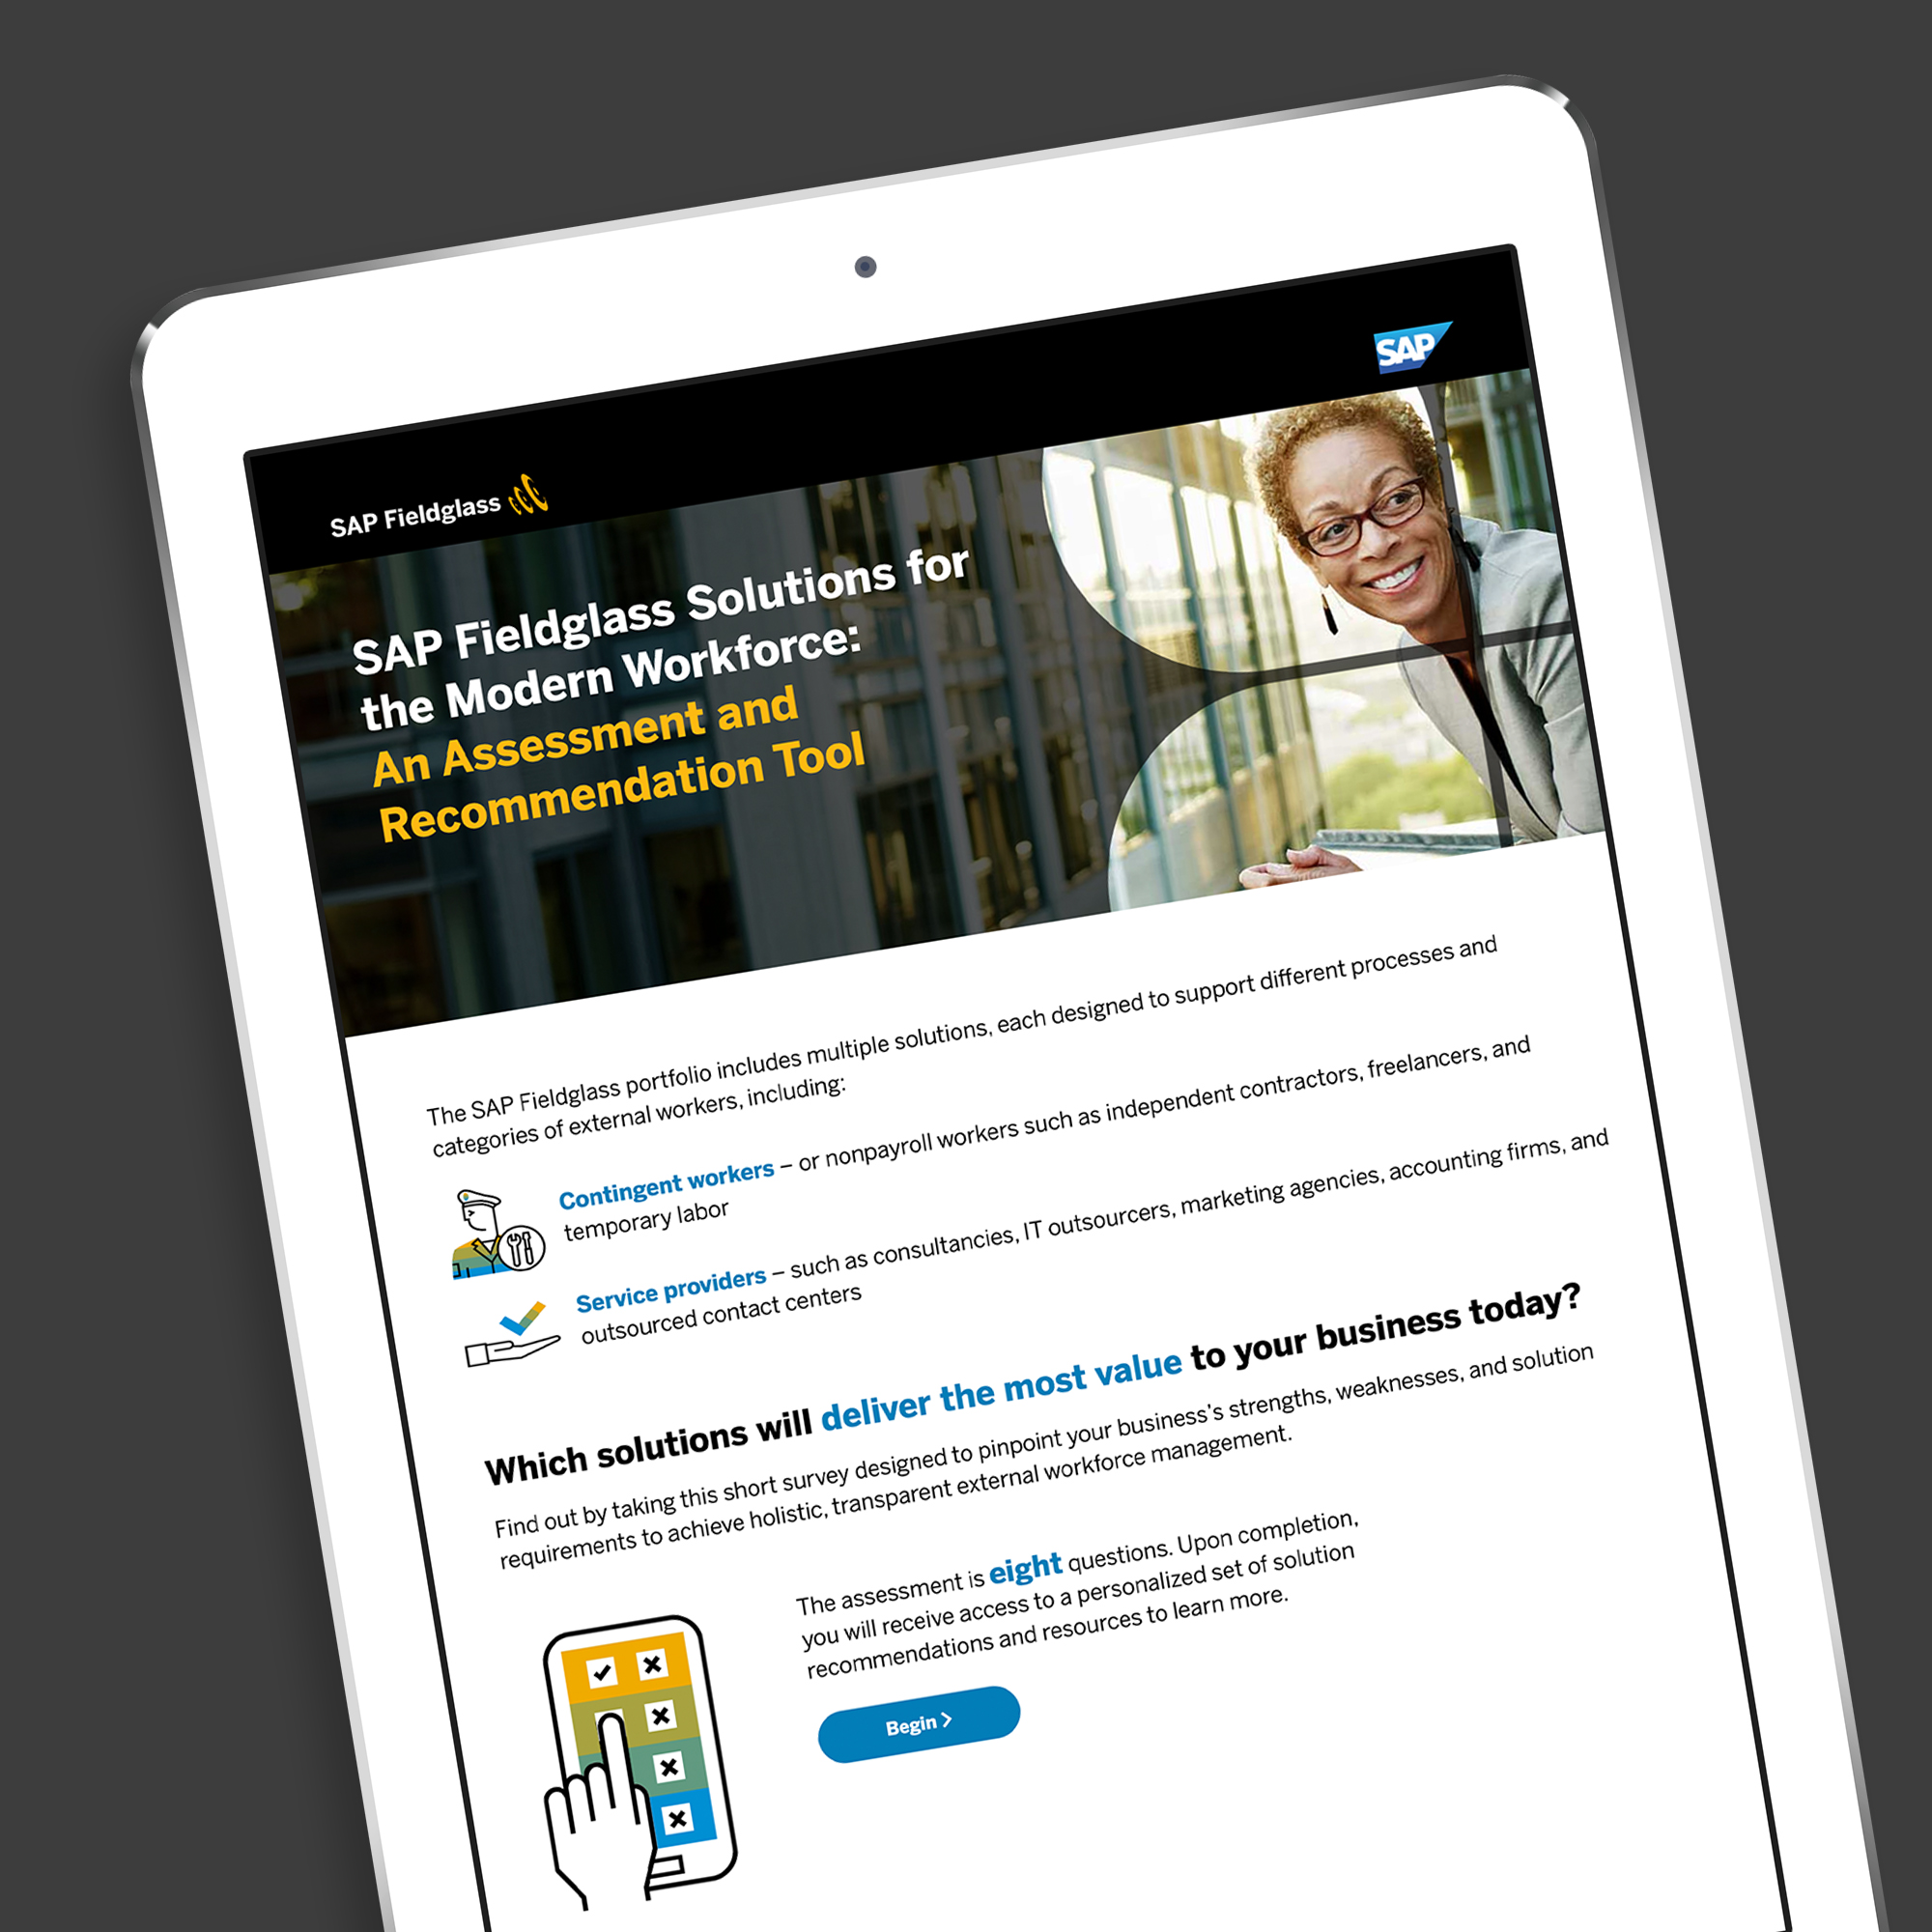 SAP Fieldglass Solutions